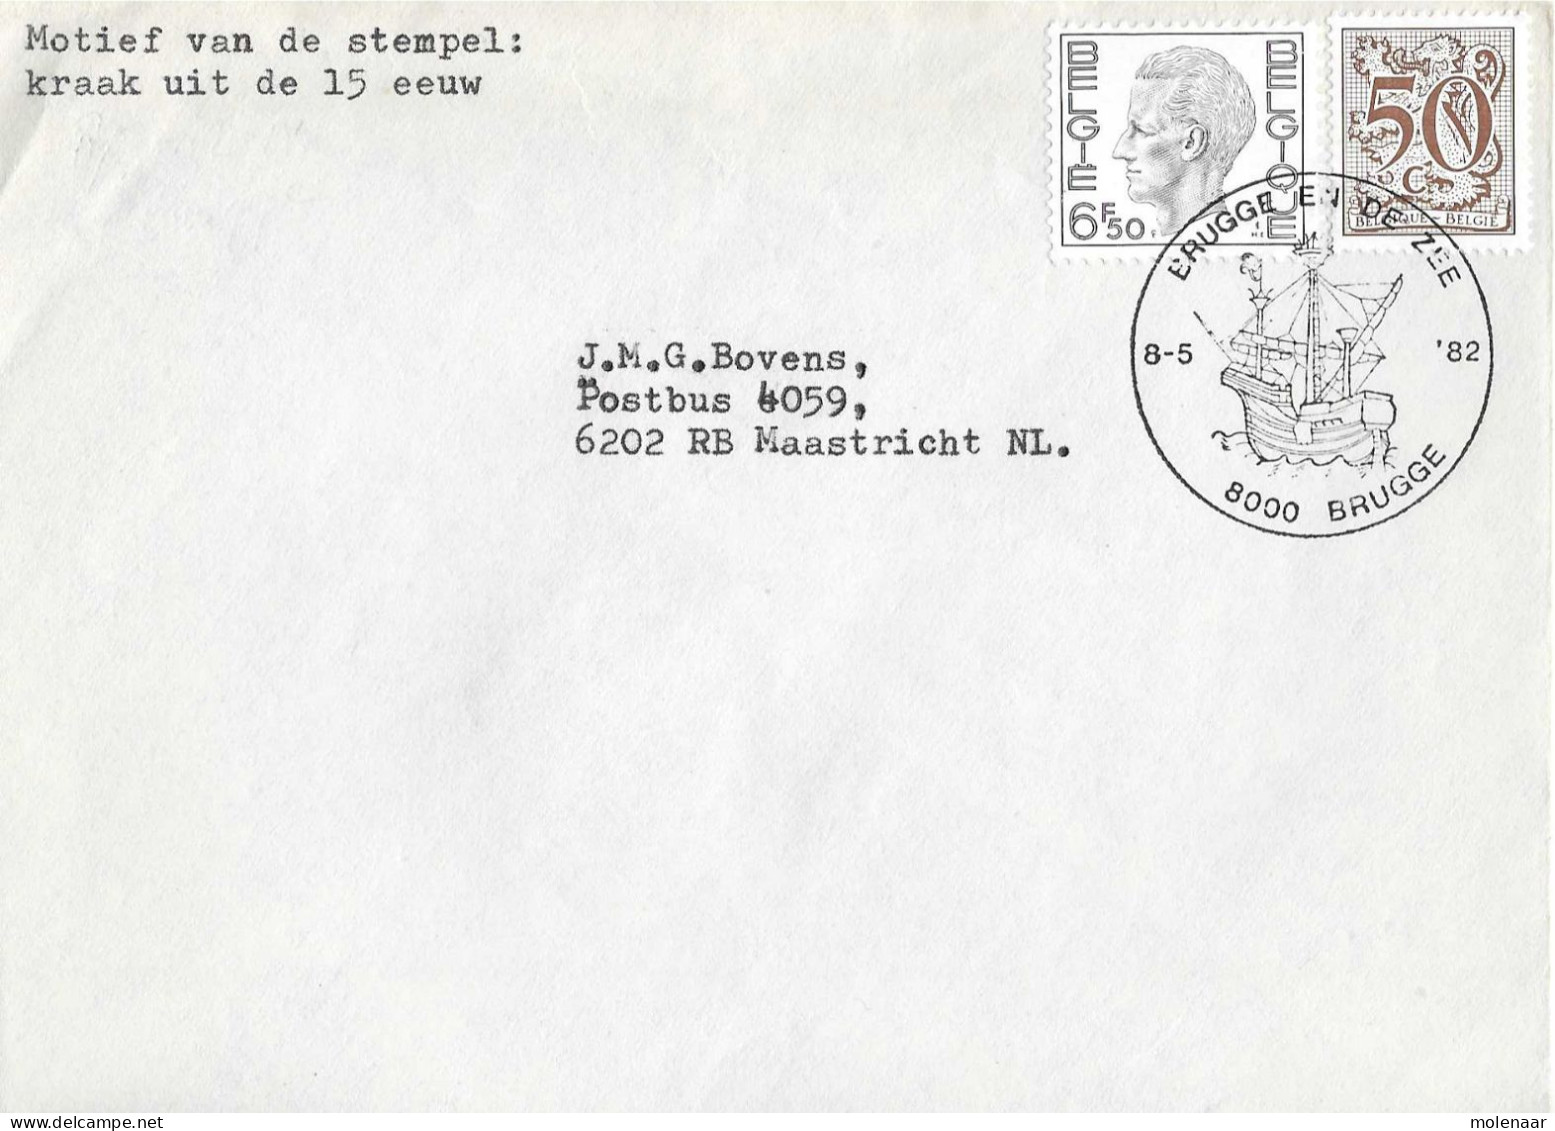 Postzegels > Europa > België > 1951-... > 1981-1990 > Brief Uit 1982 Met 2 Zegels (17041) - Lettres & Documents